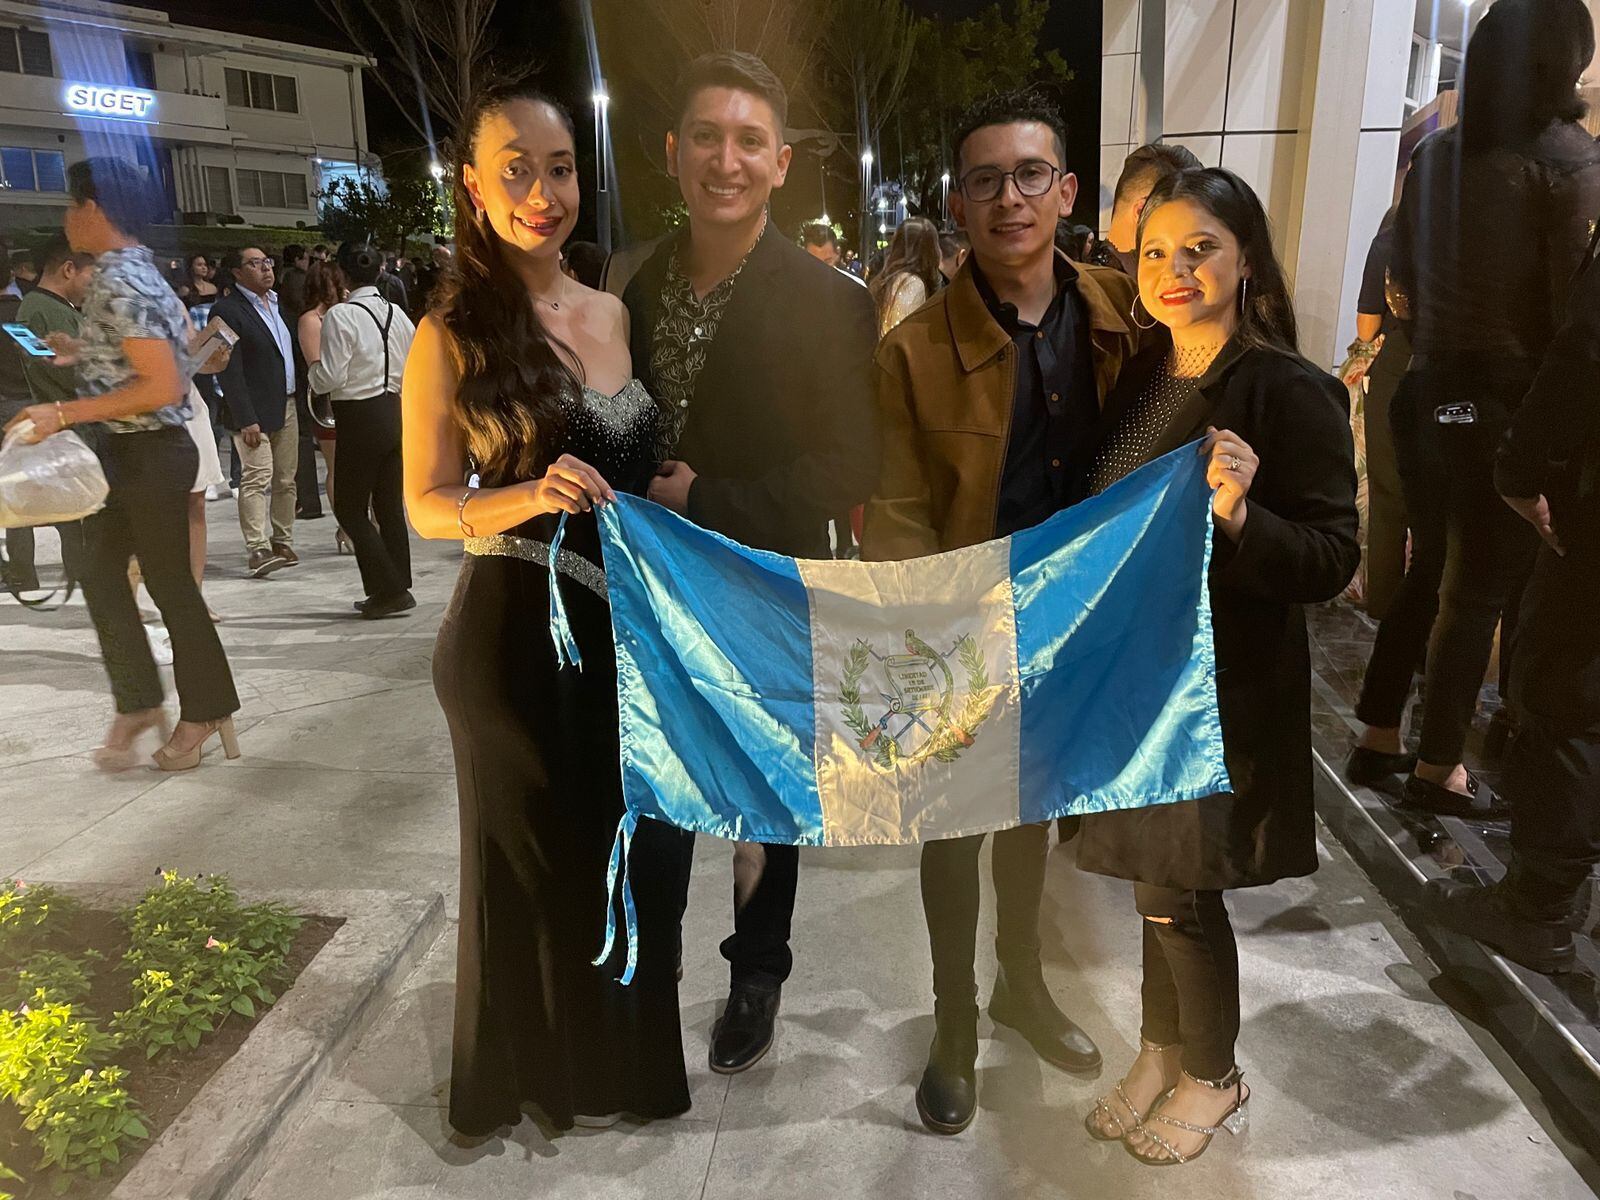 Cuatro jóvenes guatemaltecos viajaron desde su país para apoyar a su representante en el concurso. Afirman que esta es la primera vez que van a un Miss Universo y han vivido con gran ilusión el certamen. 